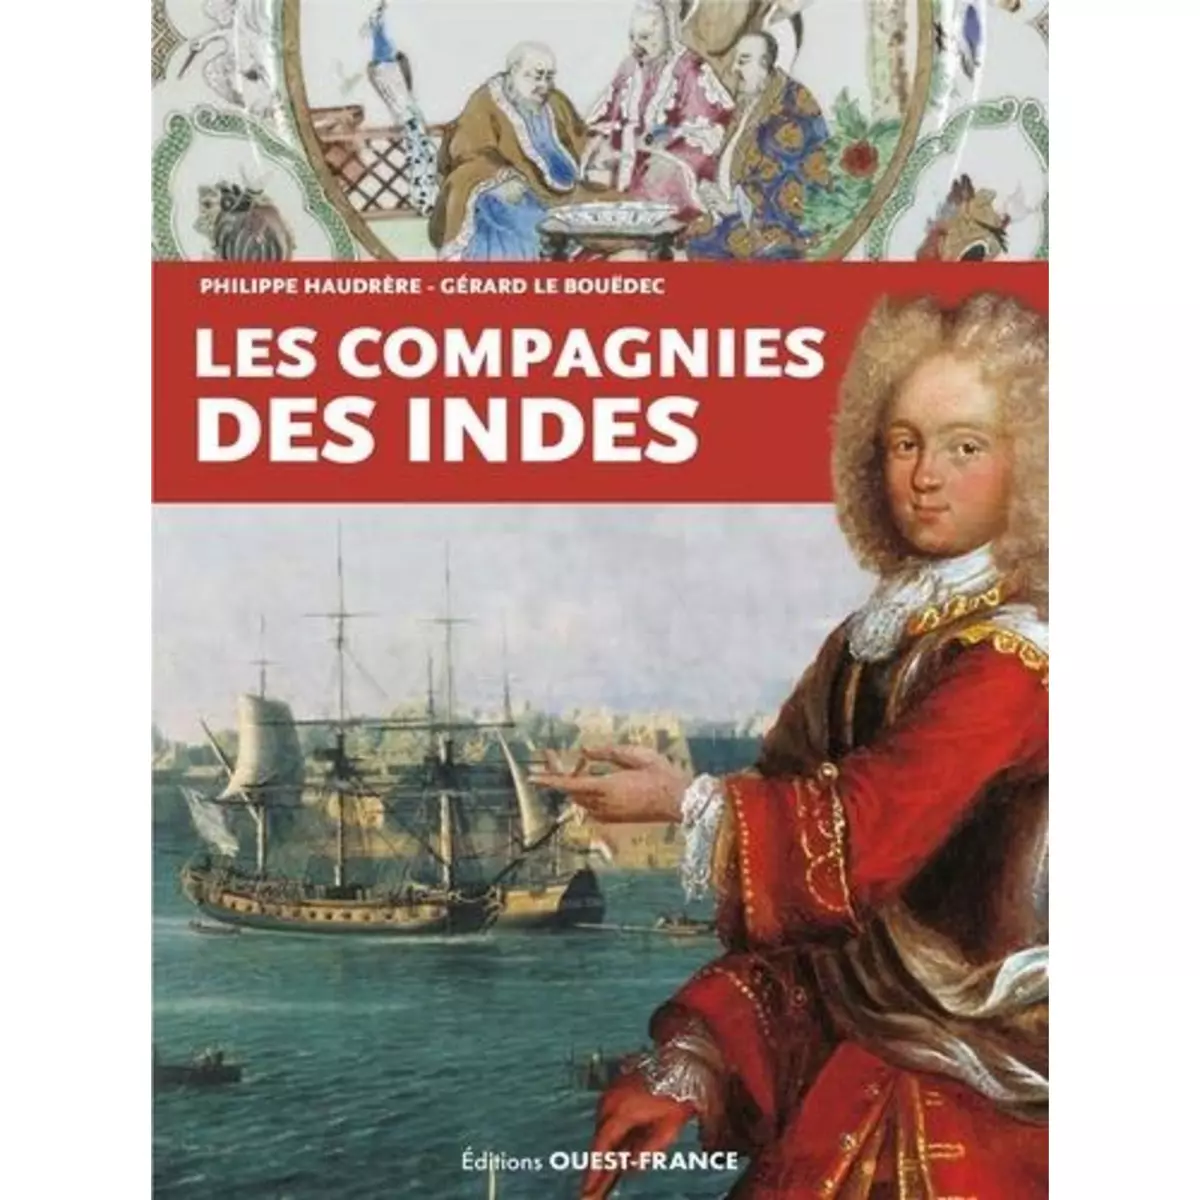  LES COMPAGNIES DES INDES, Haudrère Philippe